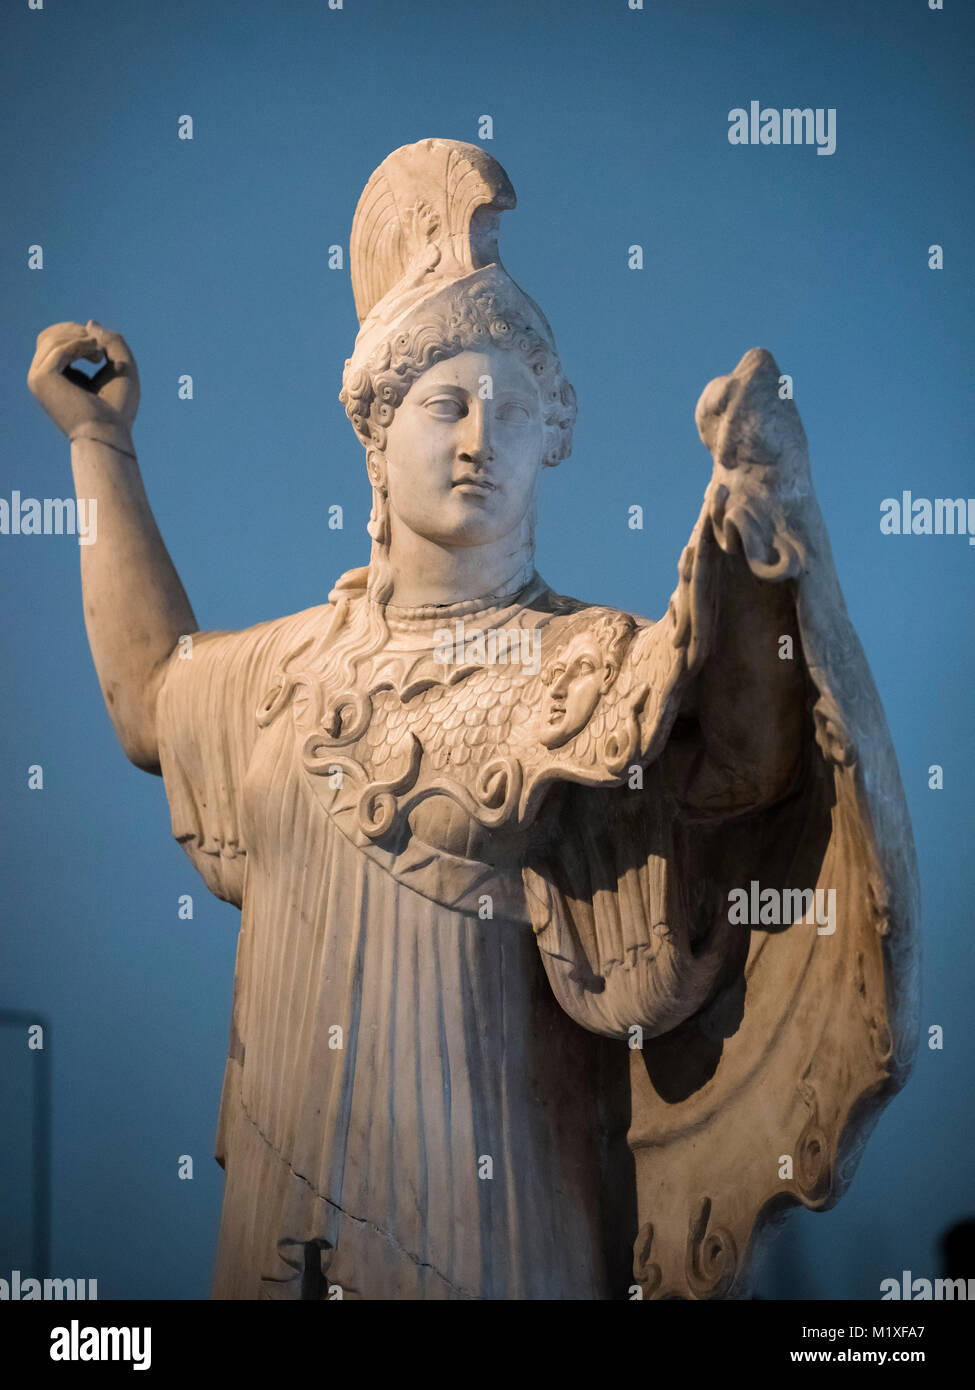 Neapel. Italien. Römische Statue von Athena Promachos. Museo Archeologico Nazionale di Napoli. Nationales Archäologisches Museum von Neapel. Inv. 6007 Athena Stockfoto